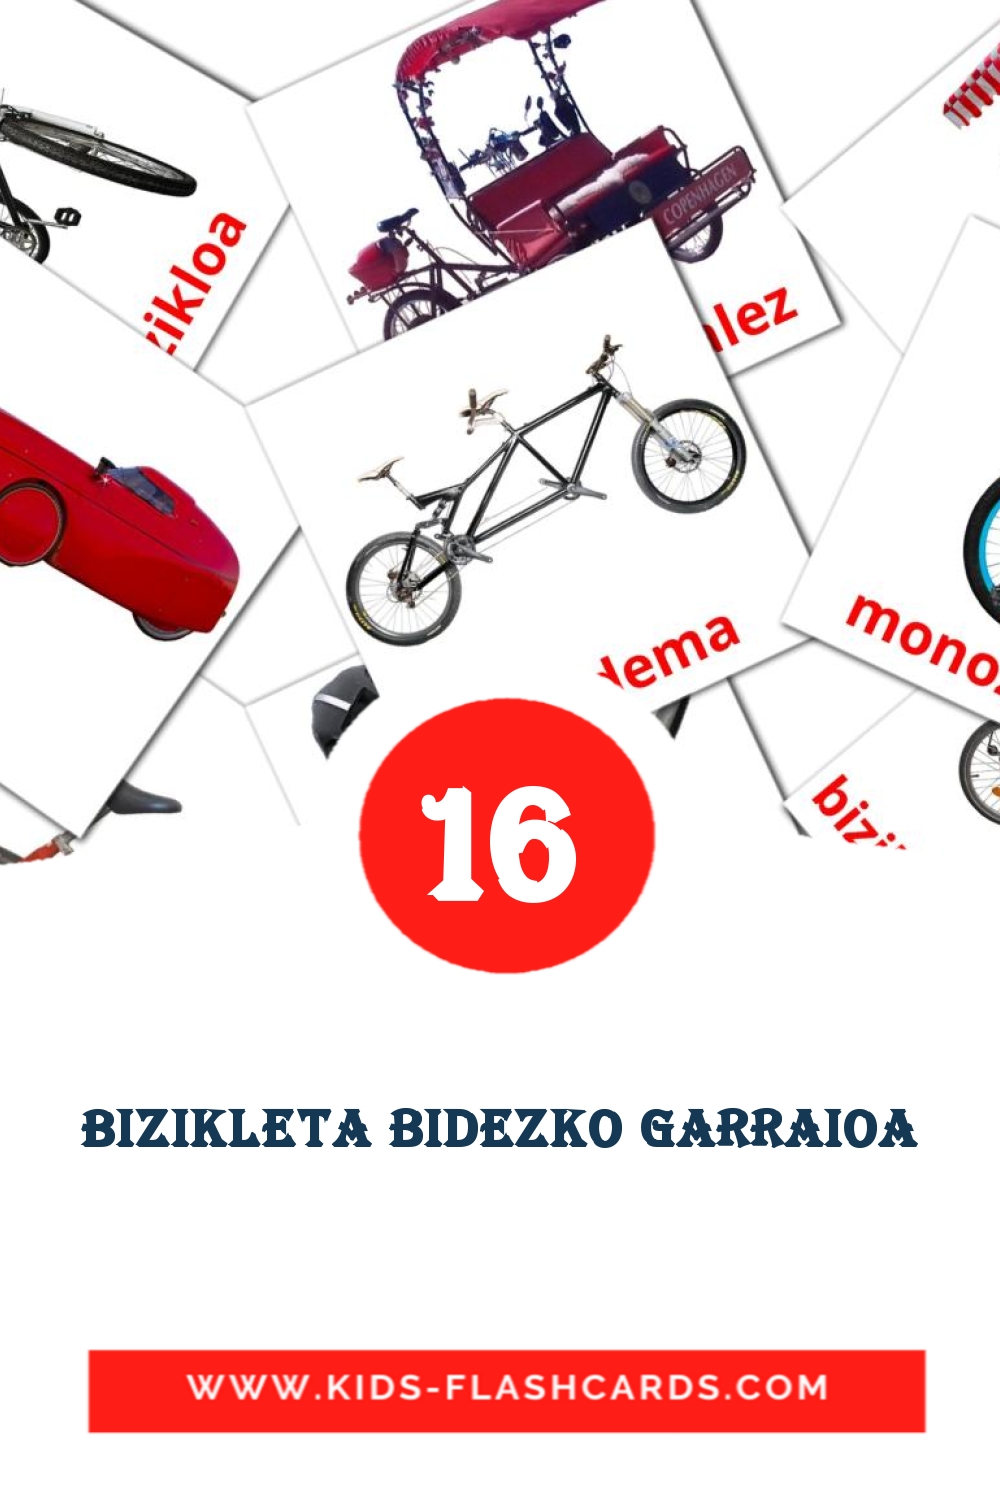 16 tarjetas didacticas de Bizikleta bidezko garraioa para el jardín de infancia en русском